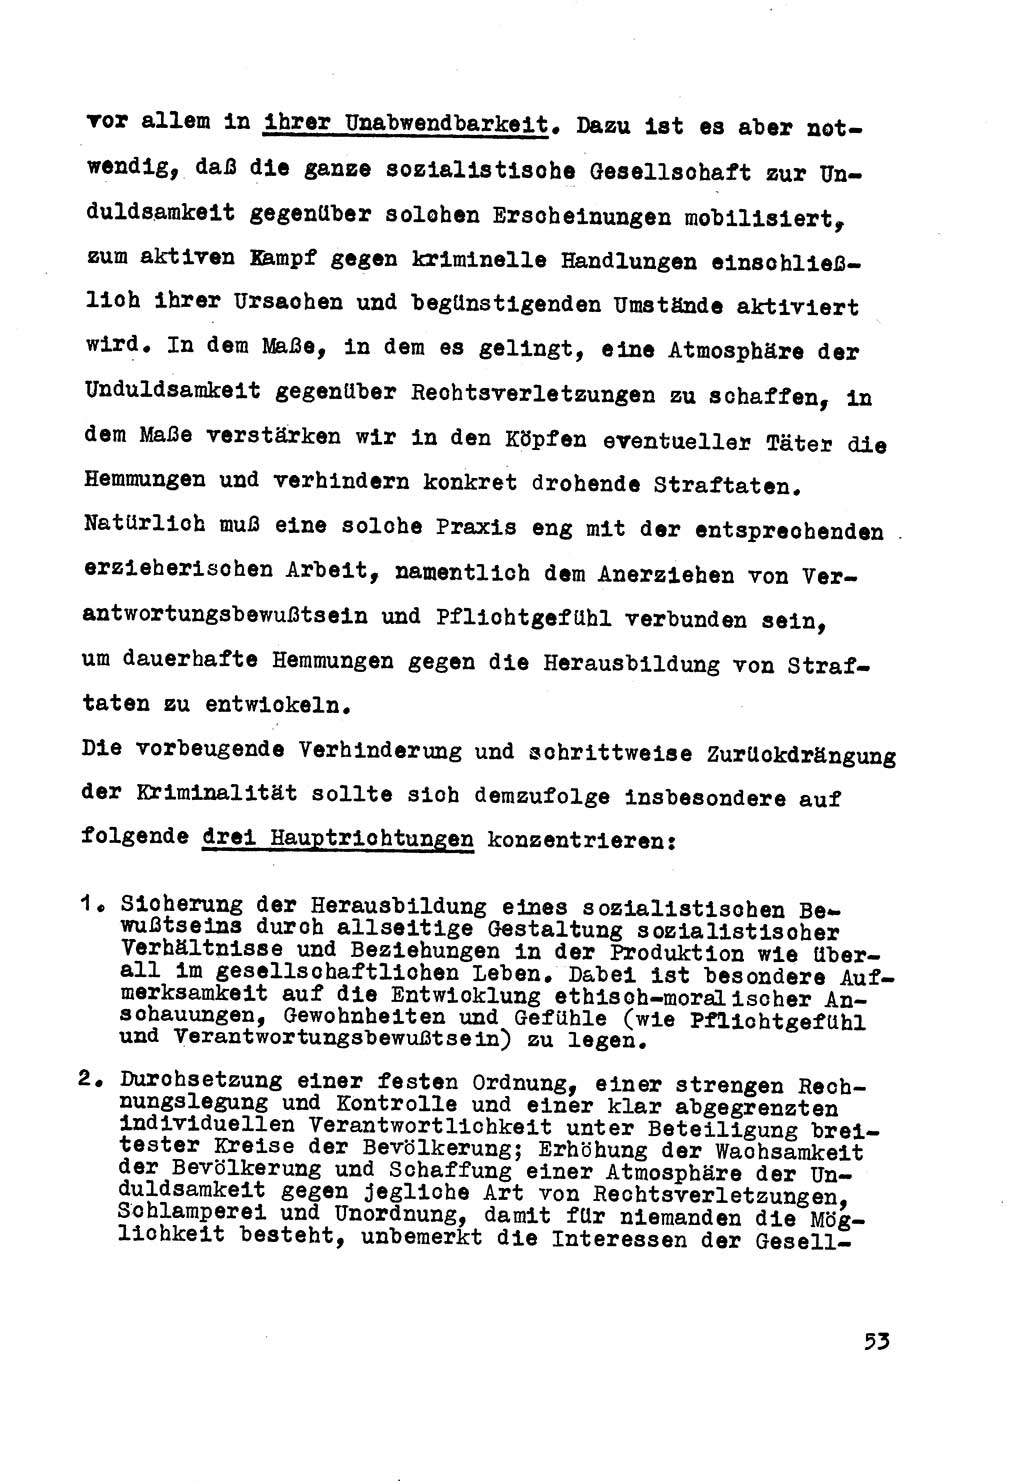 Strafrecht der DDR (Deutsche Demokratische Republik), Besonderer Teil, Lehrmaterial, Heft 5 1970, Seite 53 (Strafr. DDR BT Lehrmat. H. 5 1970, S. 53)